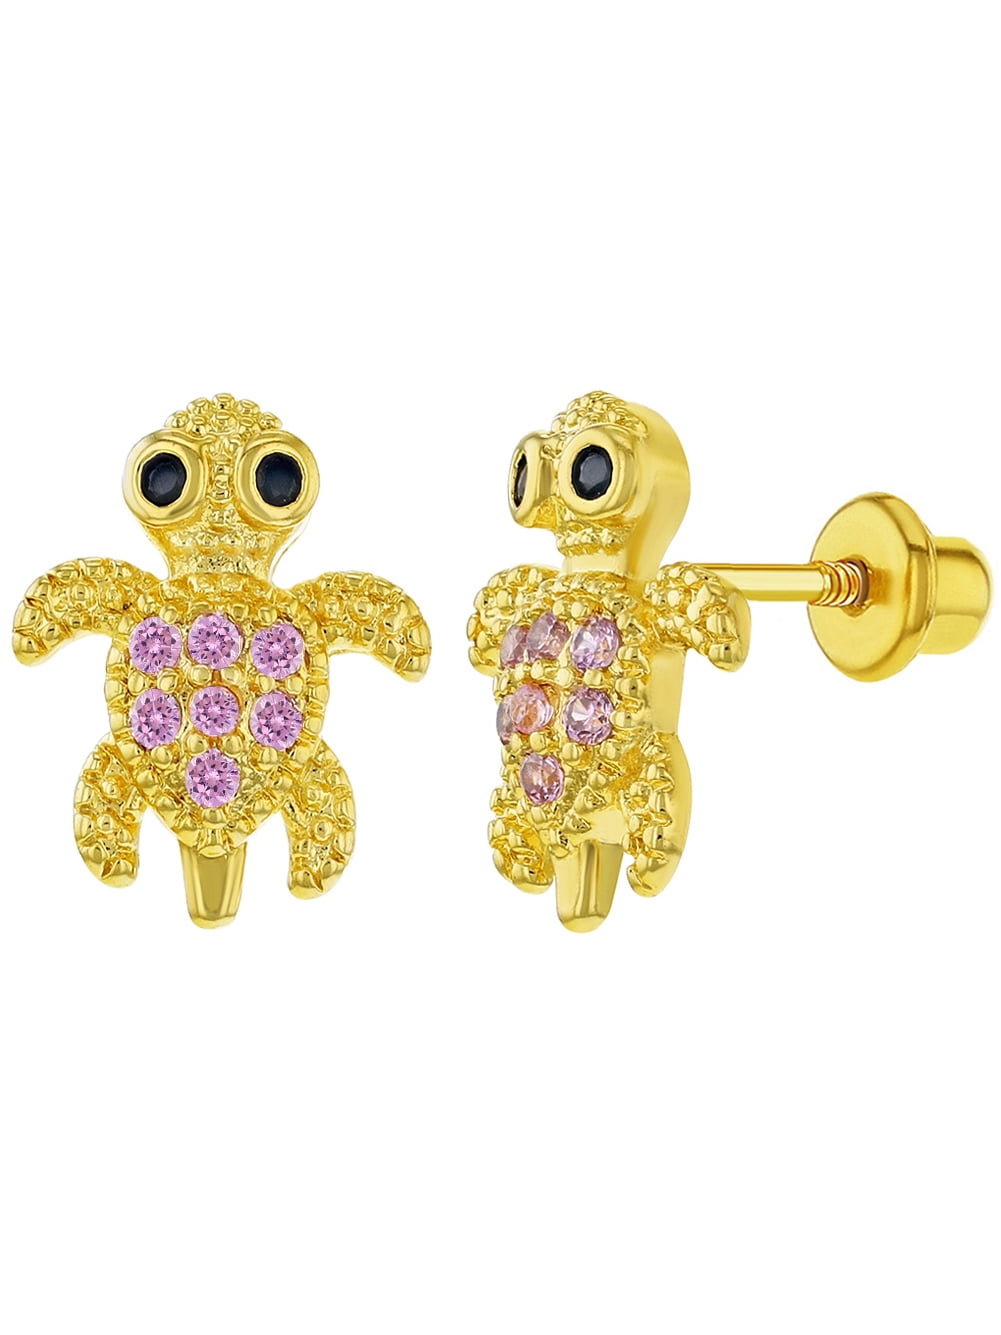 In Season Jewelry - 18k Gold Plated Turtle Earrings Screw Backs for ...